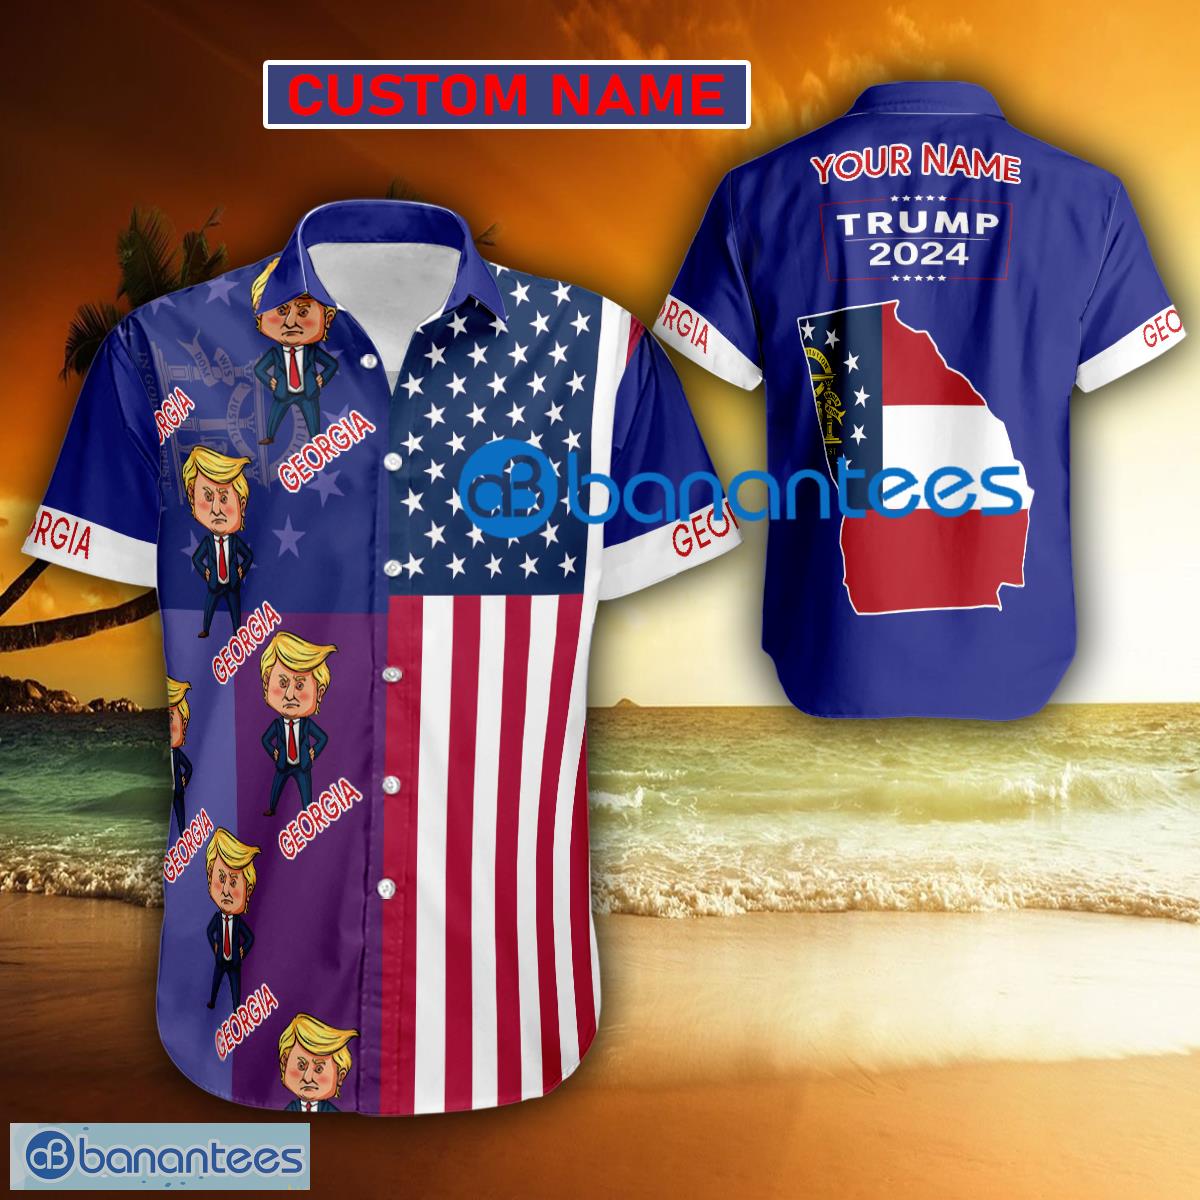 Trump 2024 Weary GEORGIA USA Flag Funny Hawaiian Shirt Gift Fans Custom Name - Trump 2024 Weary GEORGIA USA Flag Funny Hawaiian Shirt Gift Fans Custom Name